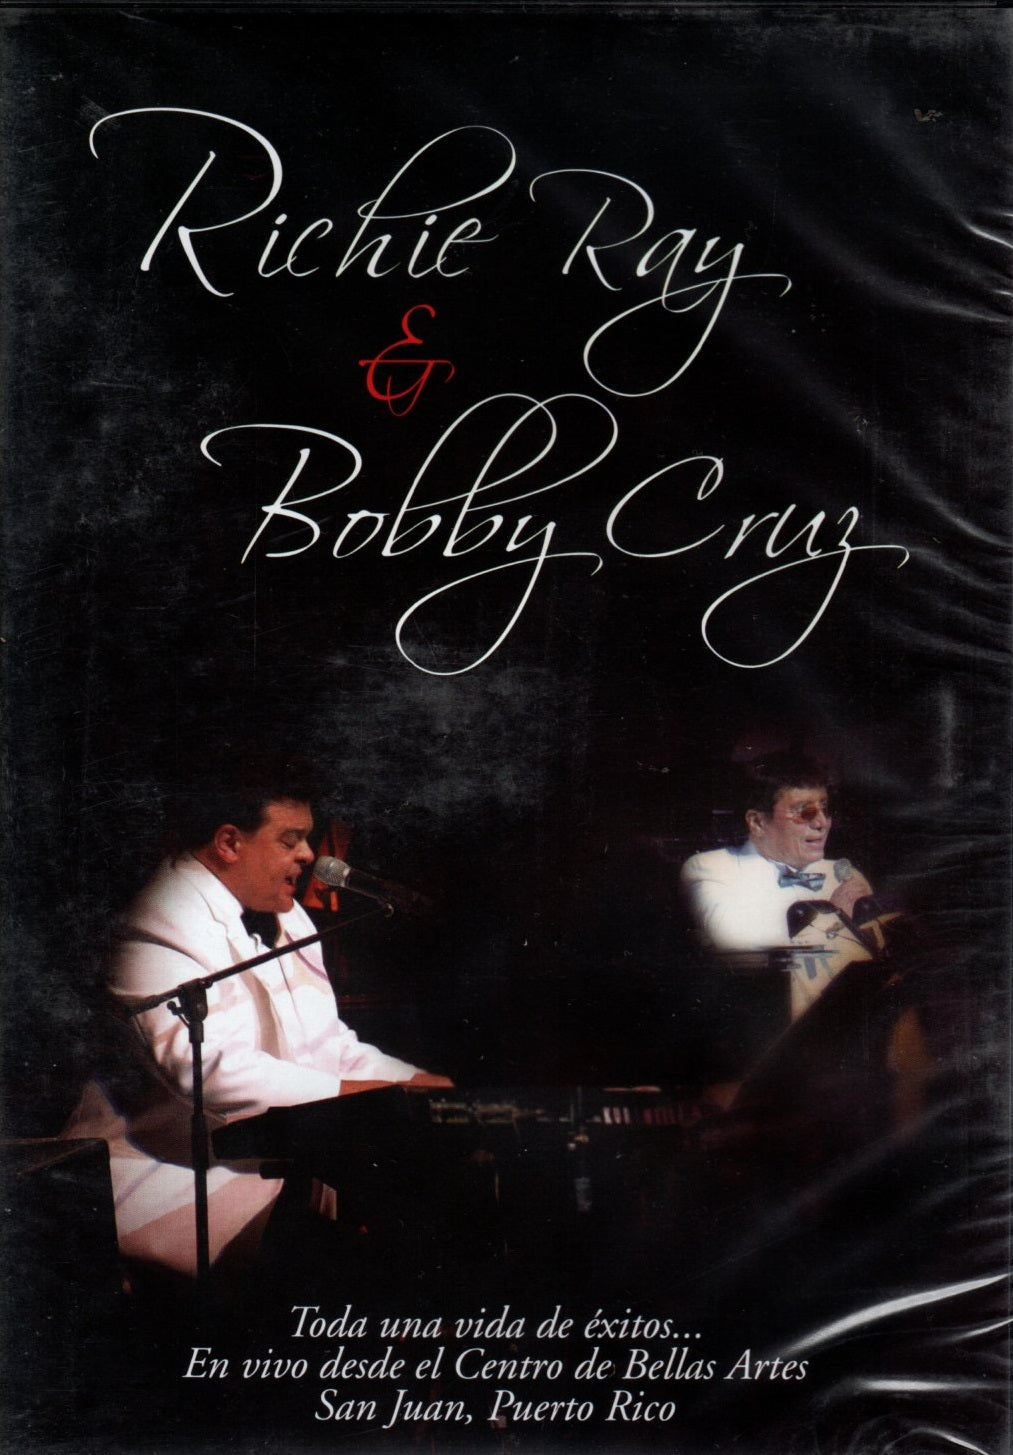 DVD RICHIE RAY & BOBBY CRUZ - TODA UNA VIDA DE EXITOS